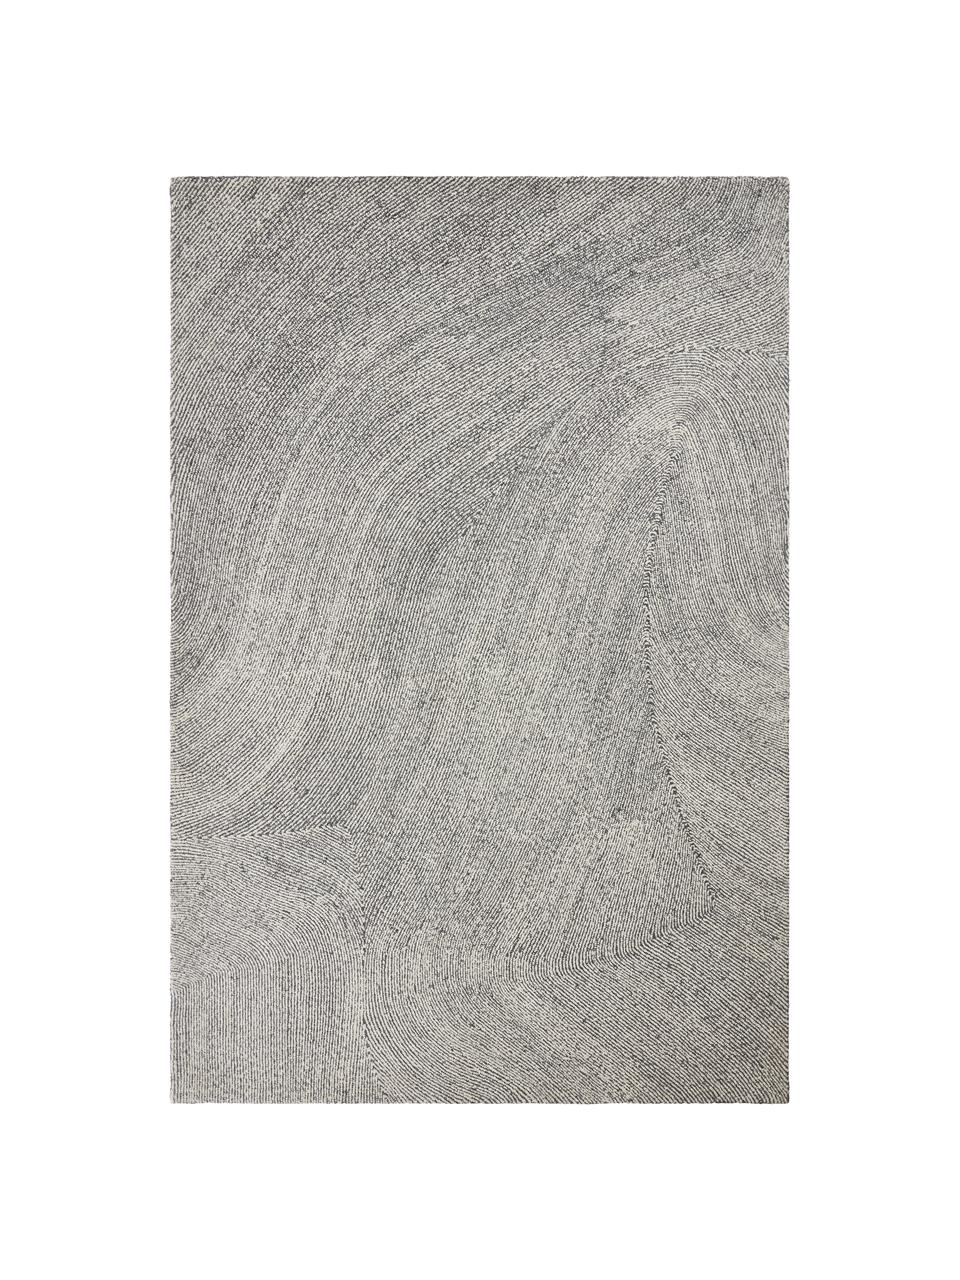 Handgeweven vloerkleed Canyon met golfachtig patroon in grijs/wit, 51% polyester, 49% wol, Grijs, B 200 x L 300 cm (maat L)